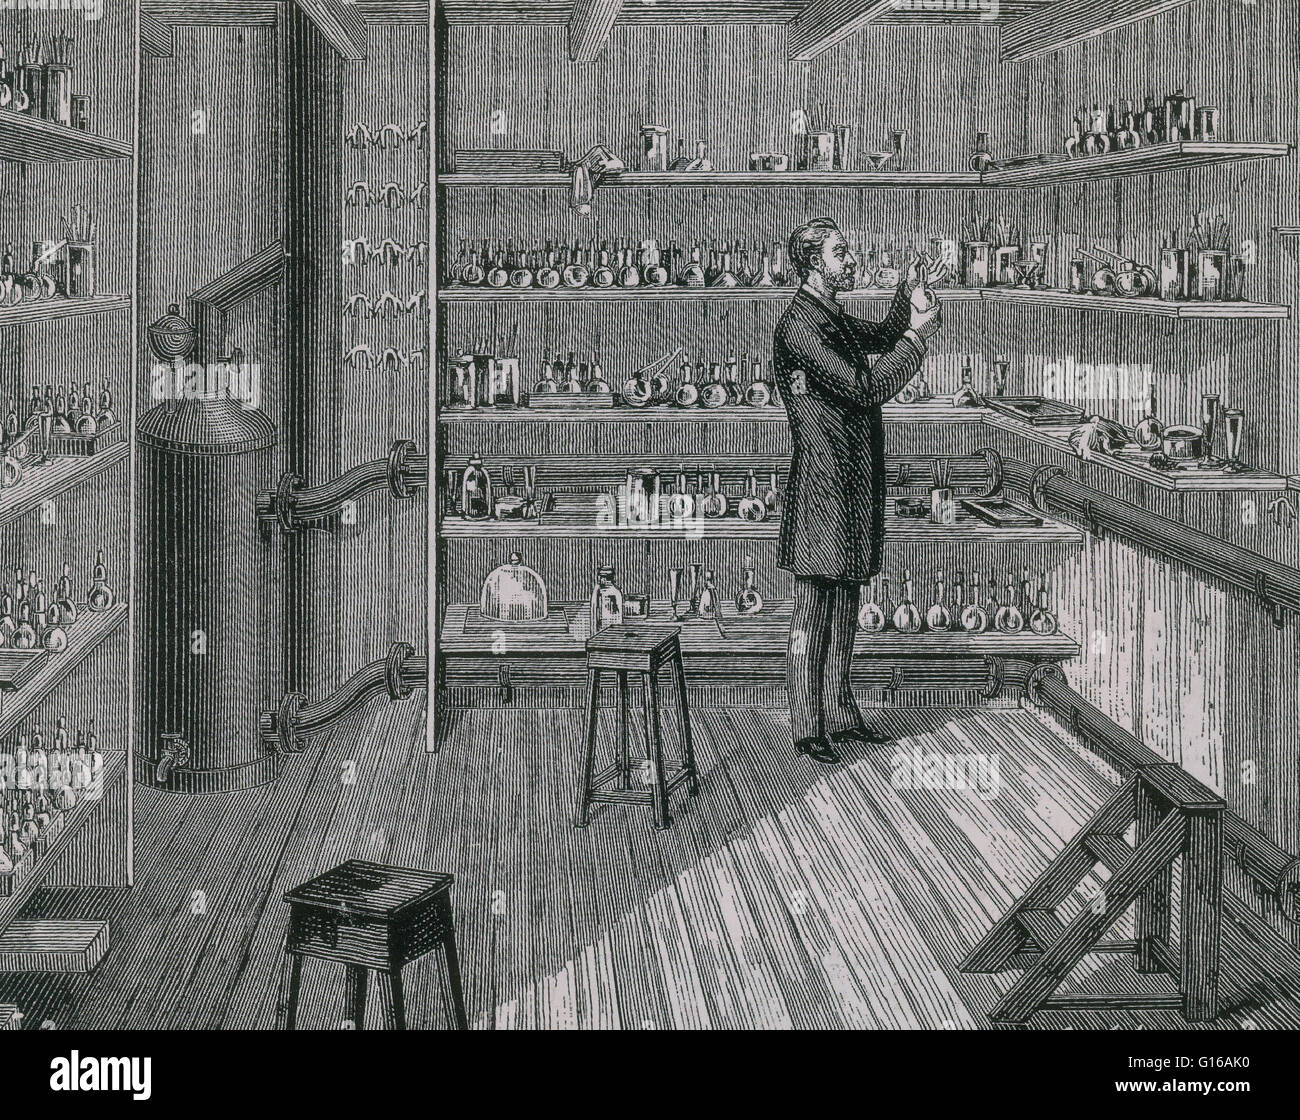 Louis Pasteur in heißen Raum am Institut Pasteur, 1884. Die heißen Raum für den Anbau von Mikroben am Institut Pasteur, Paris. Kupferstich von Poyet in La Nature. Louis Pasteur (27. Dezember 1822 - 28. September 1895) war ein französischer Chemiker und bacterio Stockfoto